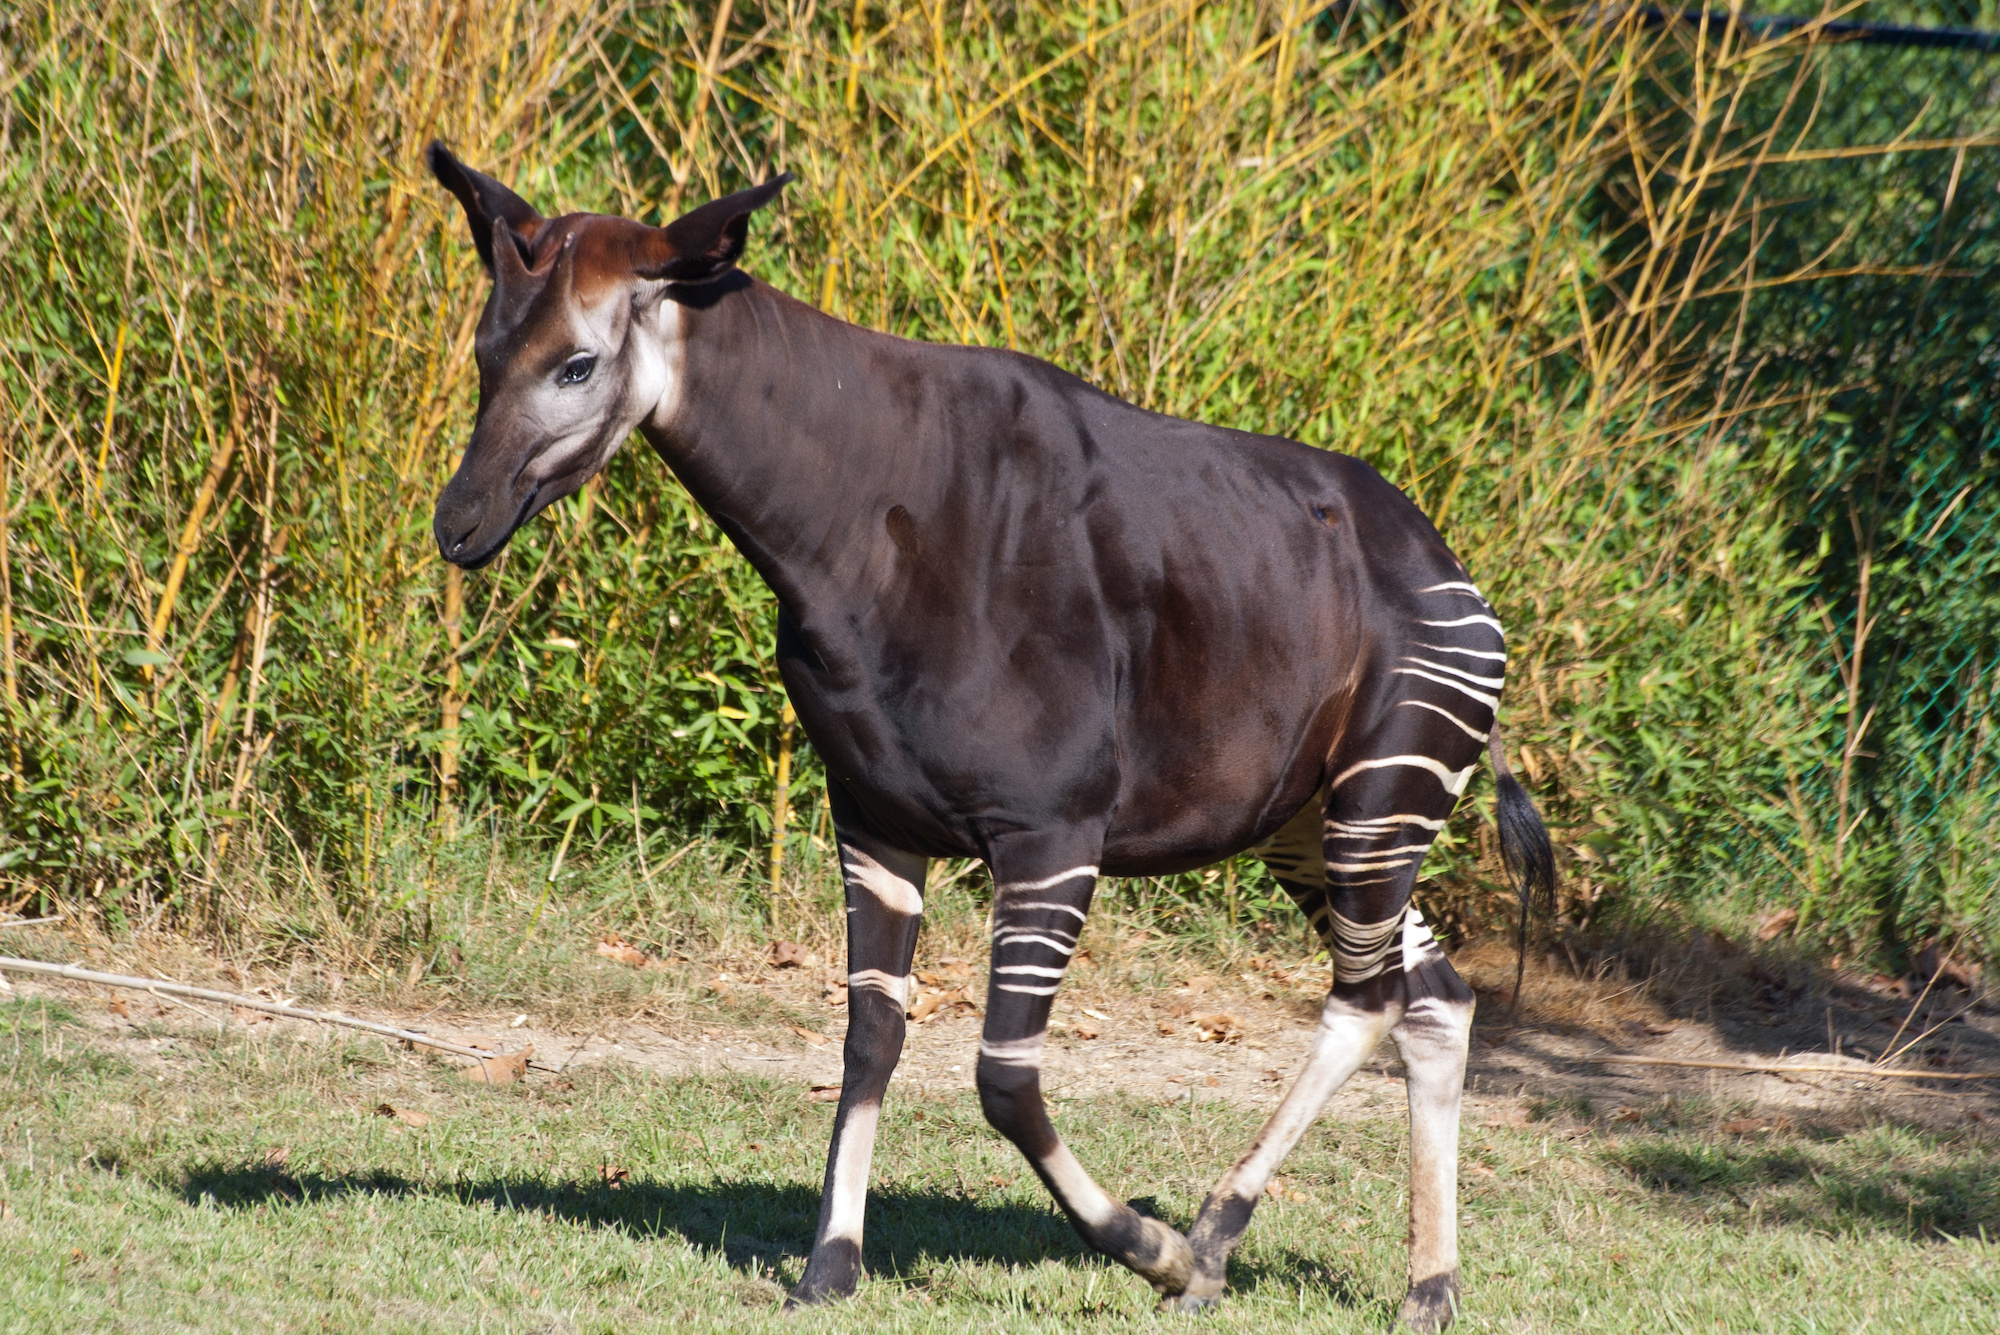 Meet the Okapi